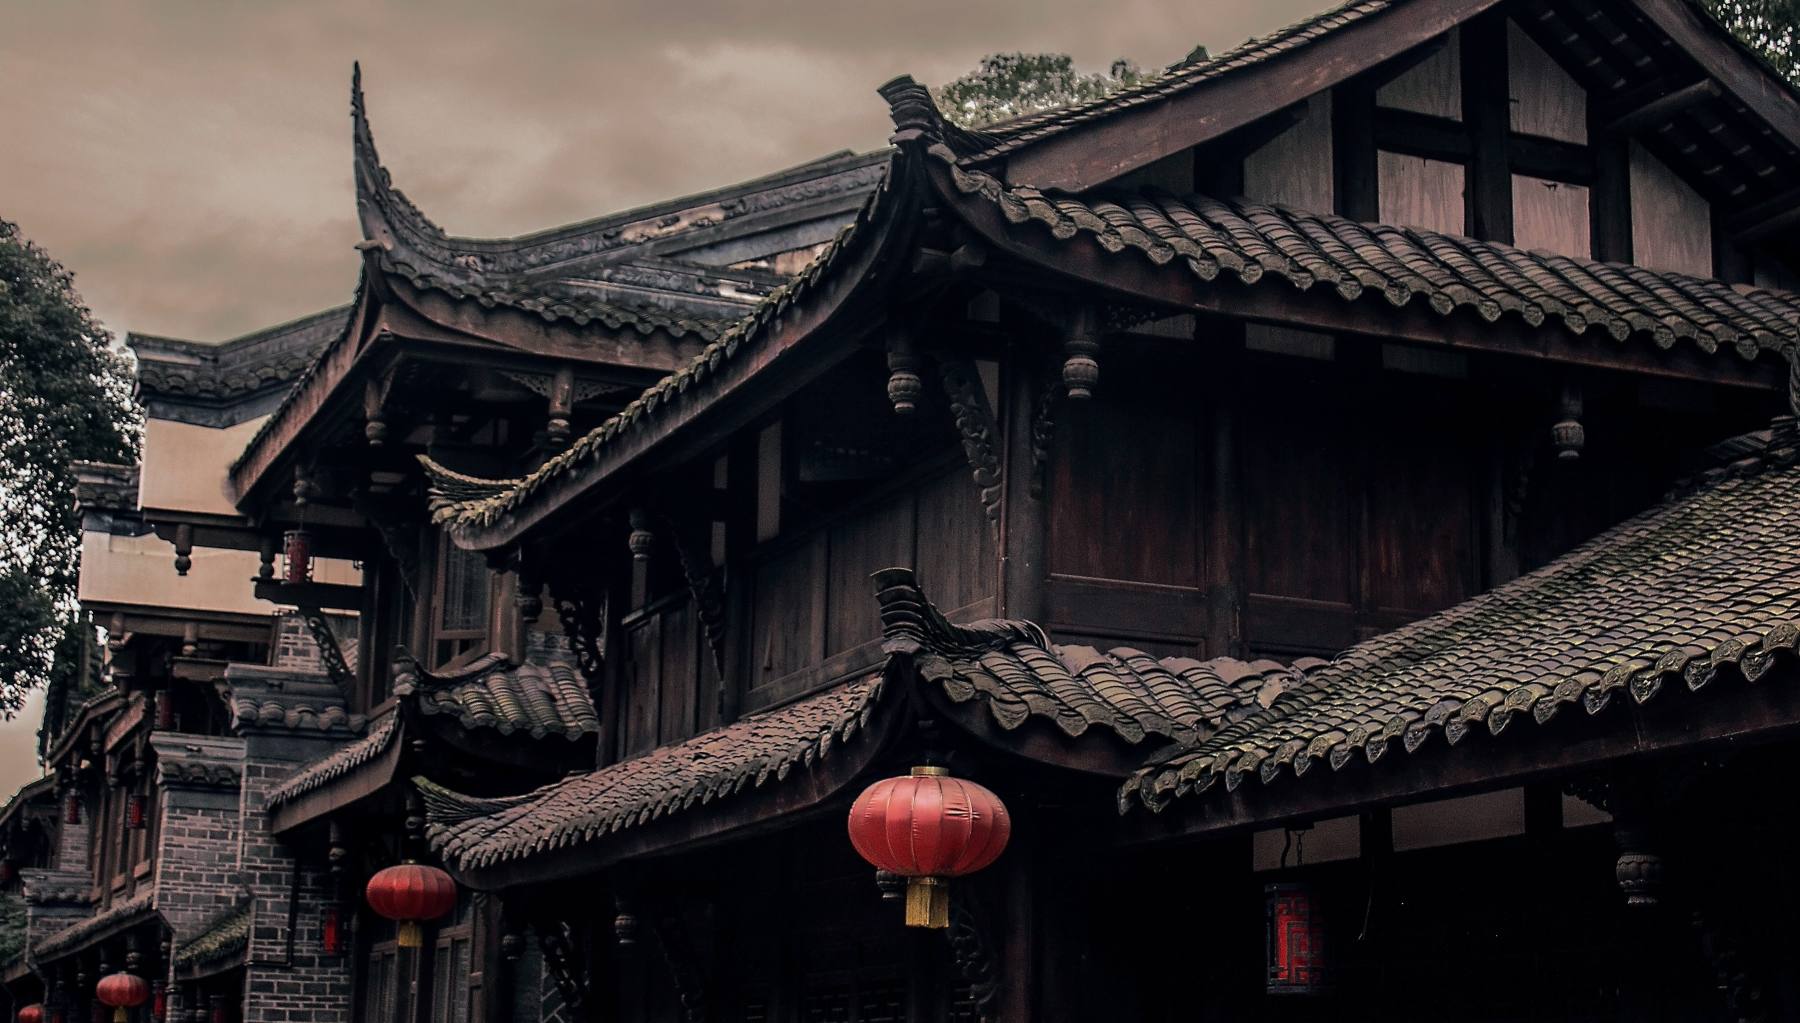 La vida en la antigua China